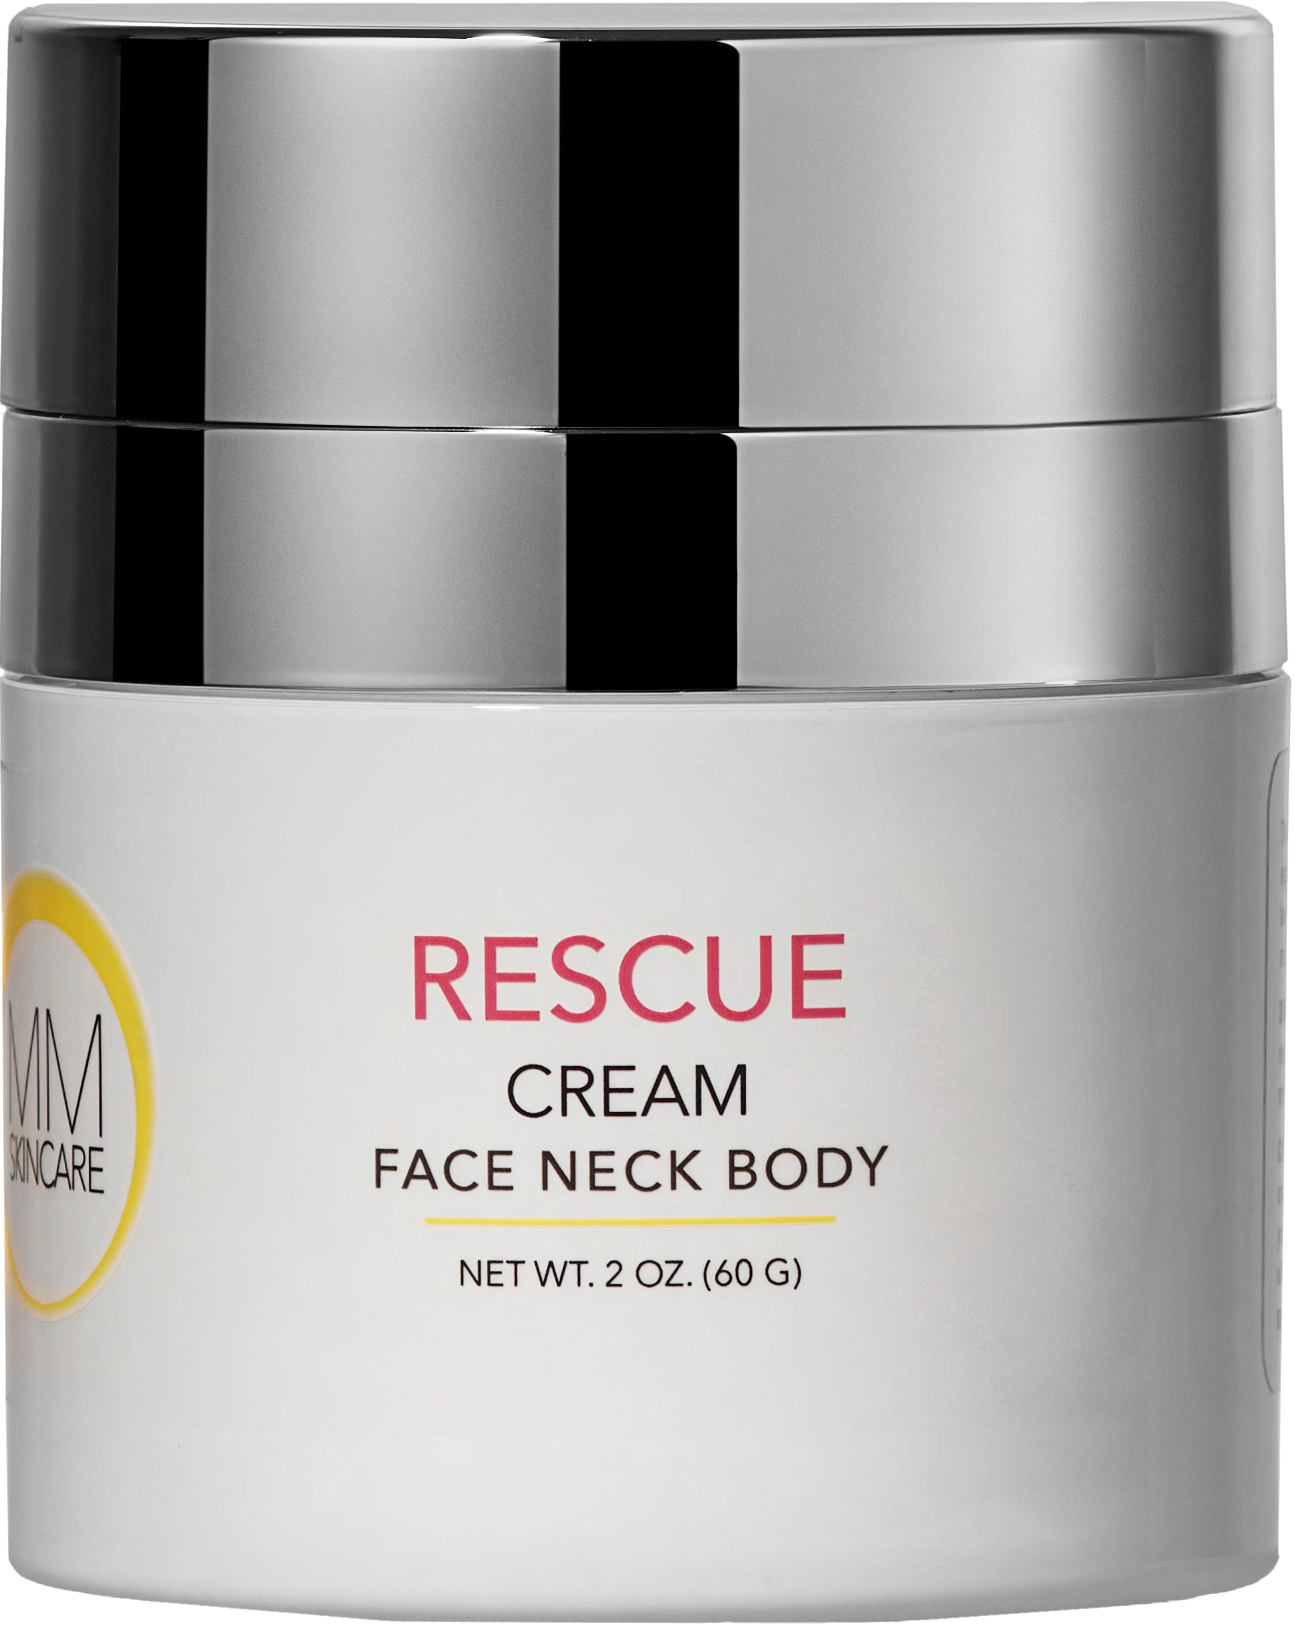 Rescue Face Neck Body Cream - MMSkincare